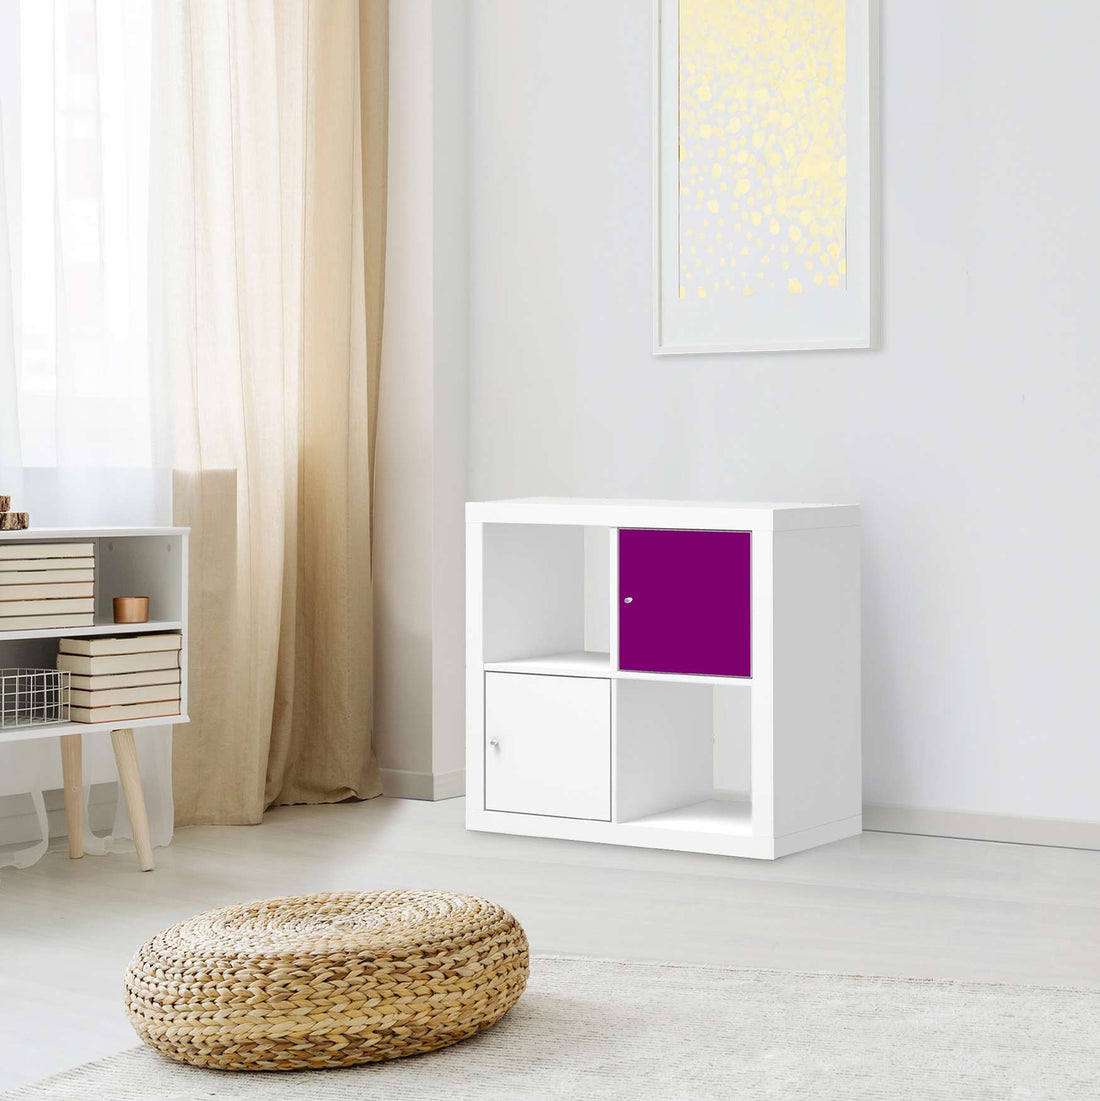 Selbstklebende Folie Flieder Dark - IKEA Kallax Regal 1 Türe - Wohnzimmer